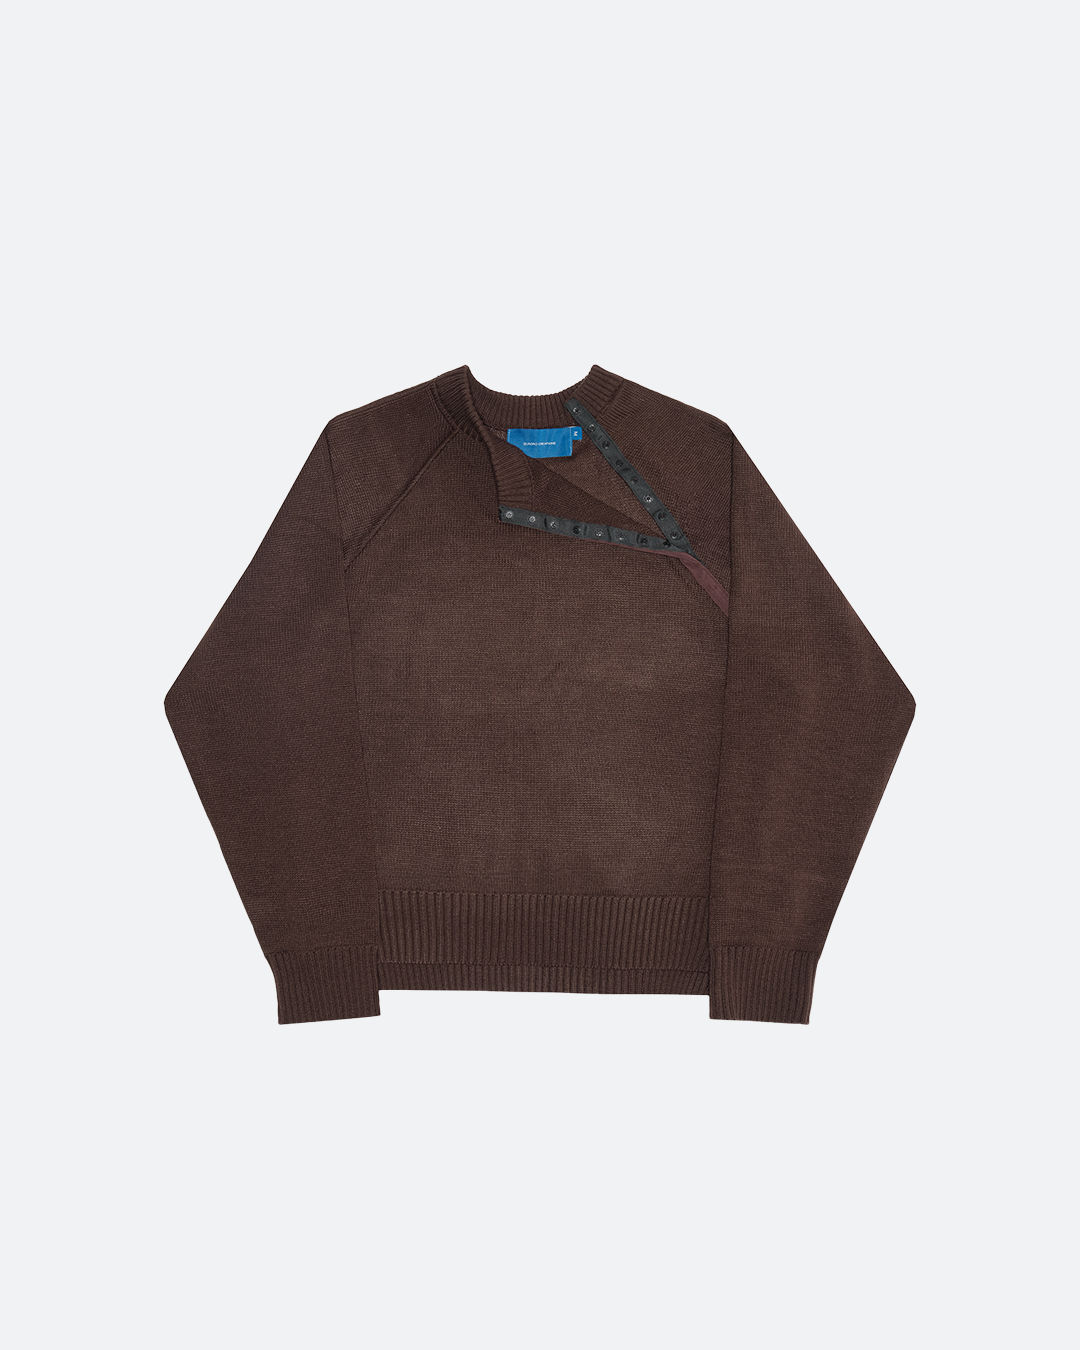 Aquino Brown Sweater